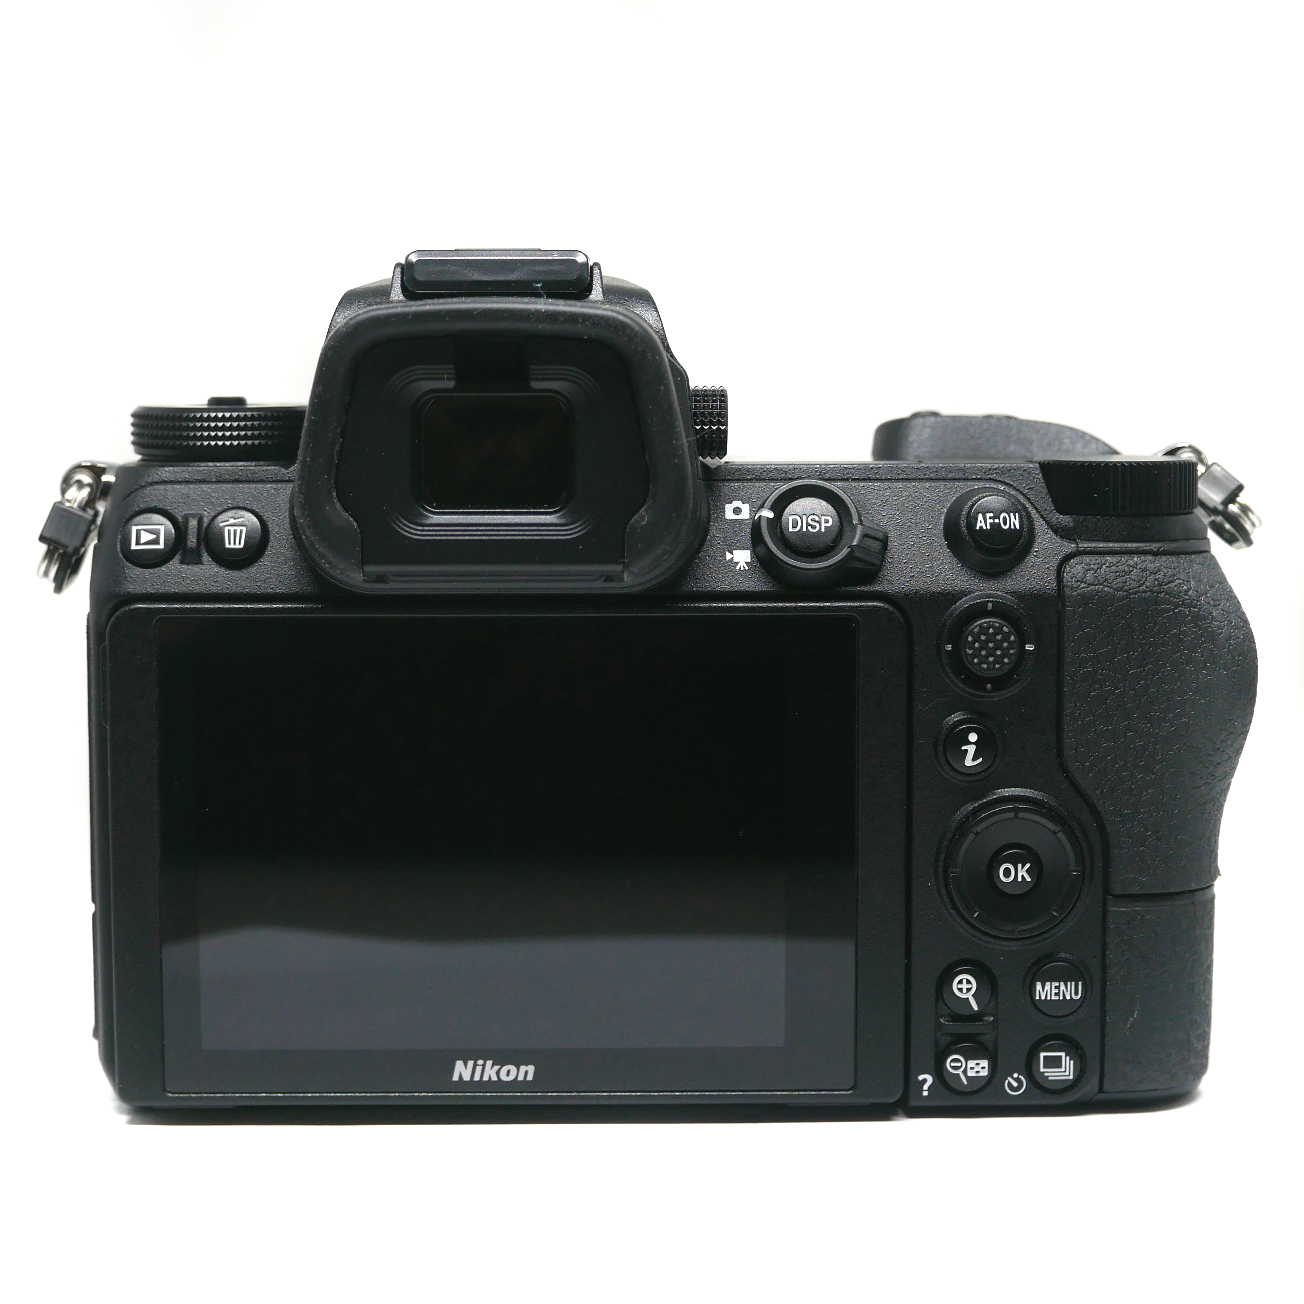 (Myyty) Nikon Z7 runko (SC: 735) (käytetty)